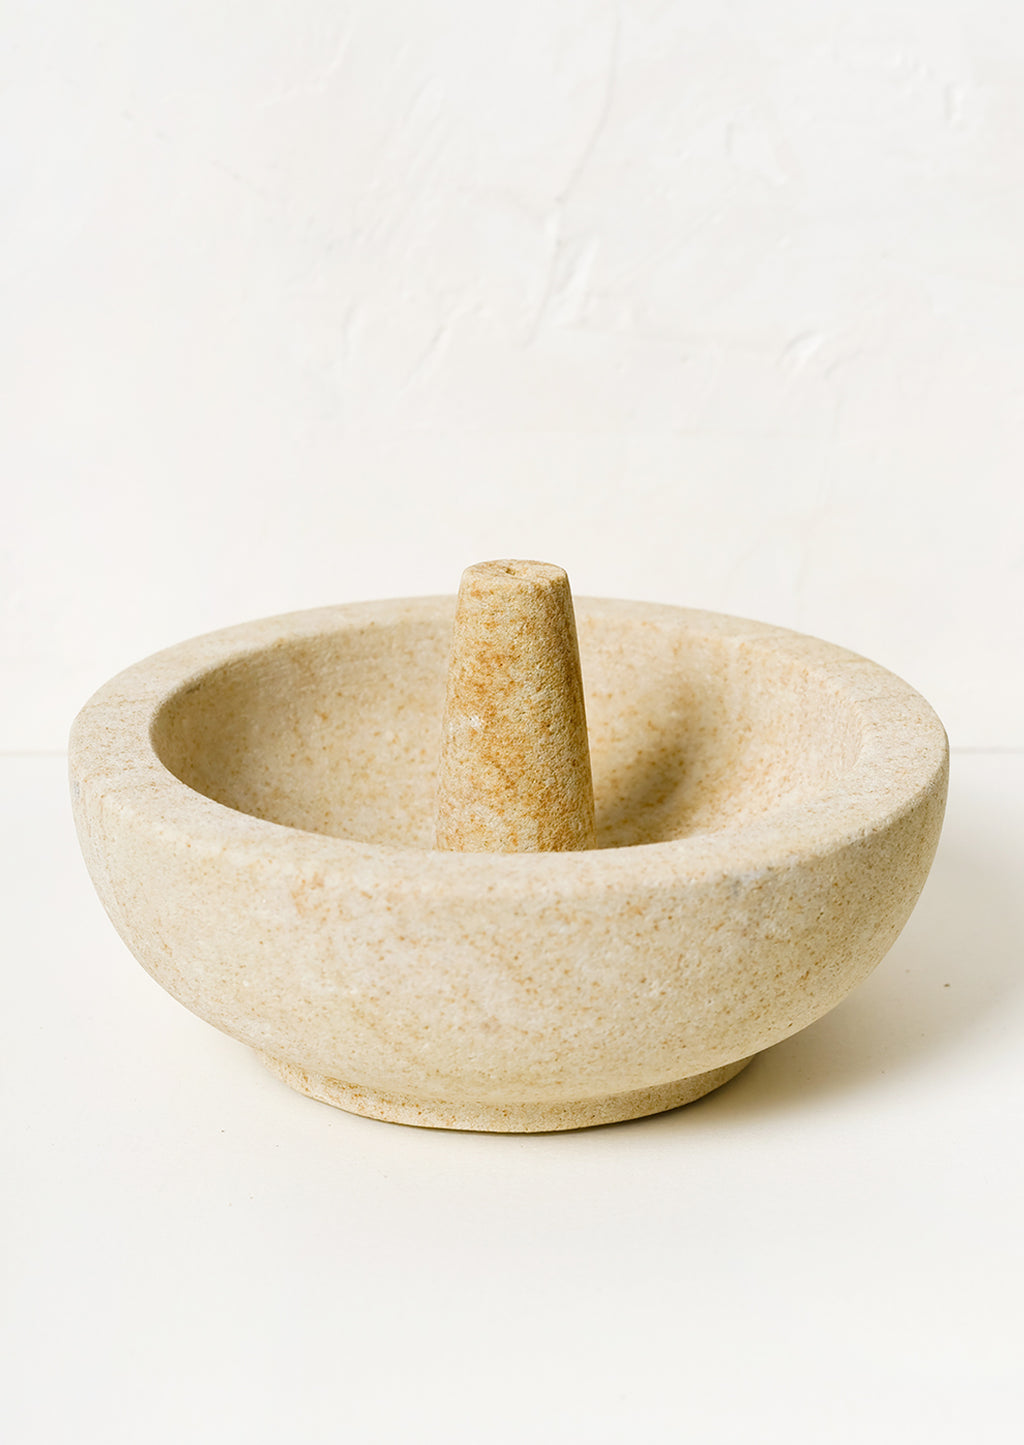 1: A sandstone incense burner with bowl for stick incense.